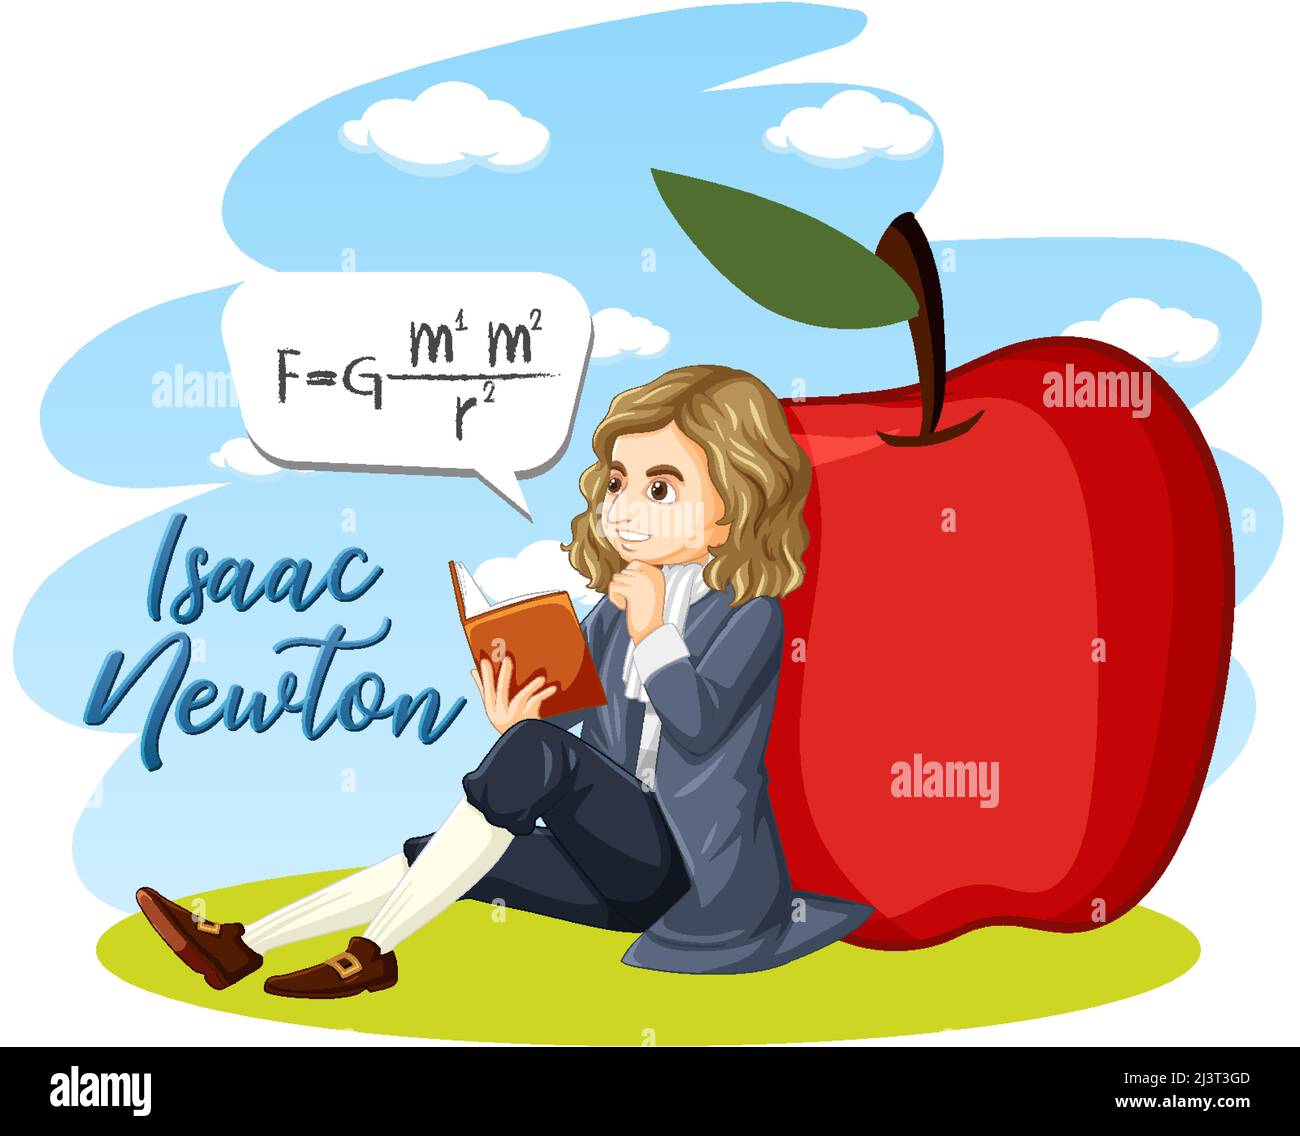 Retrato de Isaac Newton en ilustración de estilo de dibujos animados Ilustración del Vector